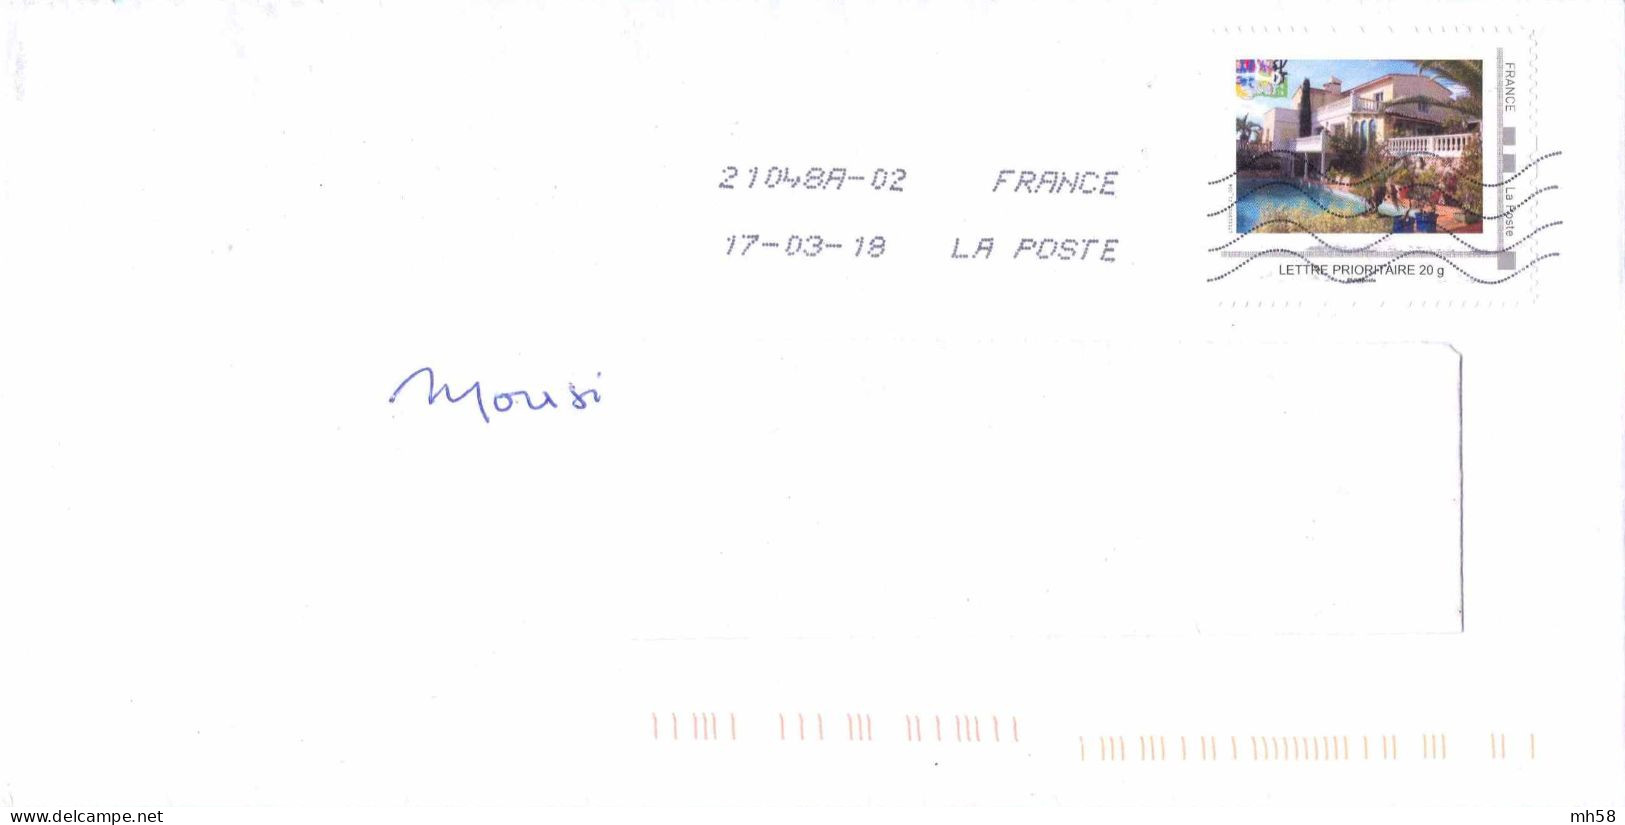 FRANCE - MonTimbraMoi Villa Avec Piscine Sur Enveloppe De 2018 - Lettre Prioritaire 20g - Briefe U. Dokumente